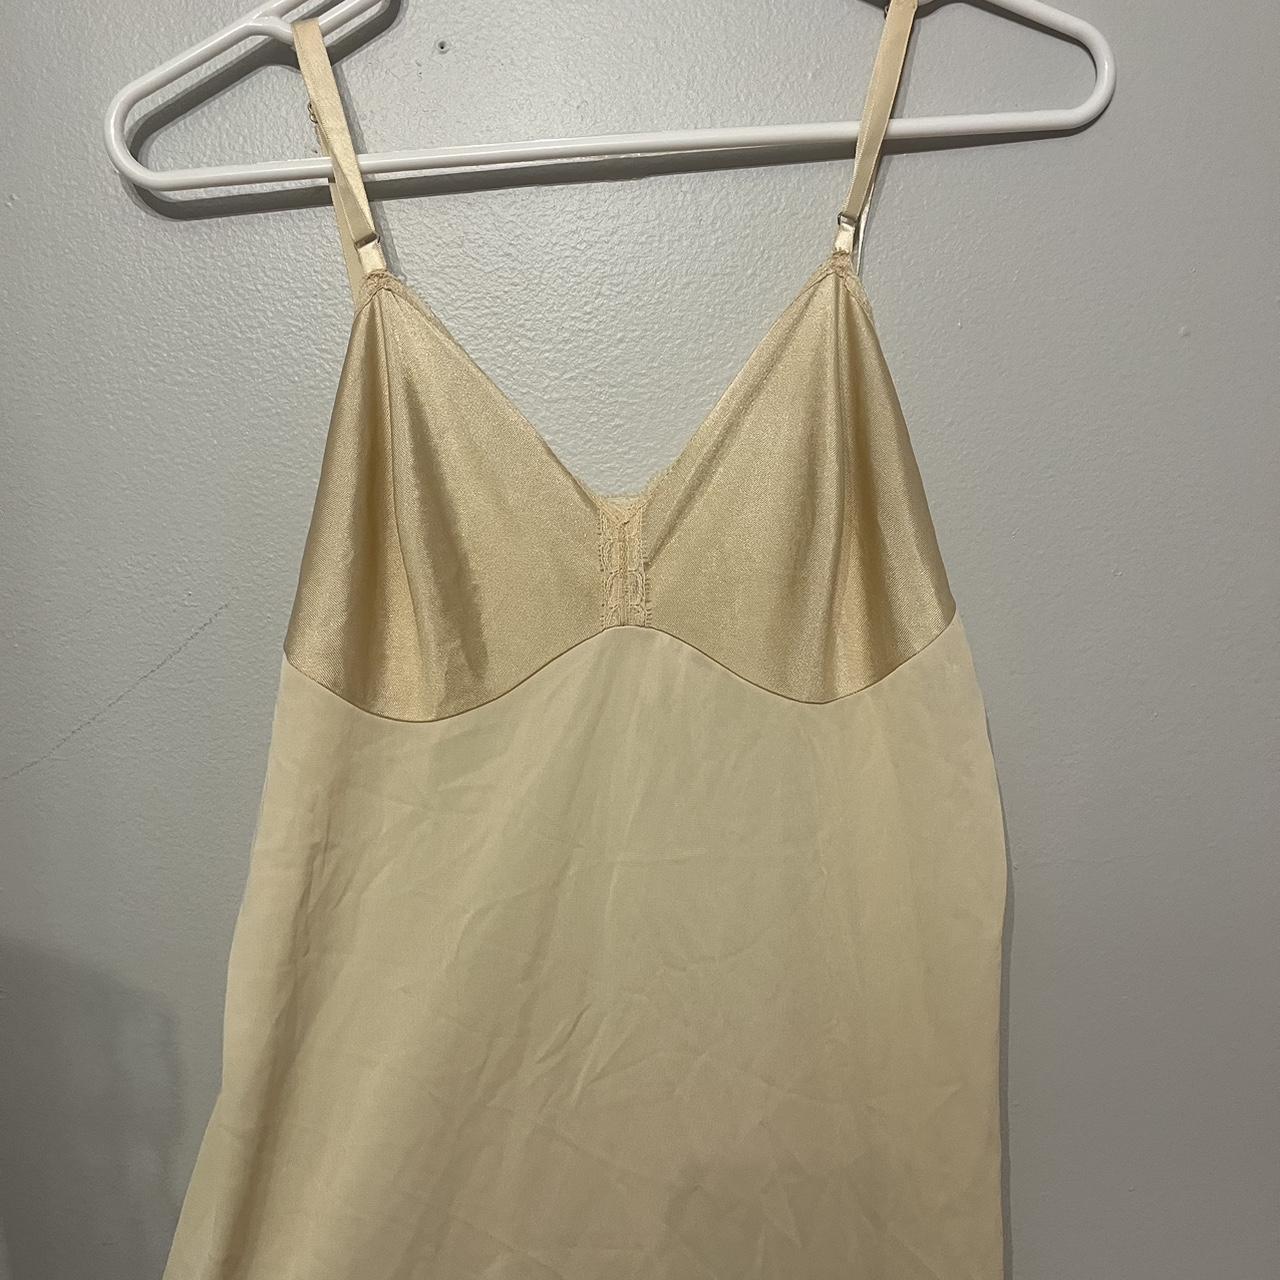 Simple vintage coquette slip dress. Can fit size... - Depop